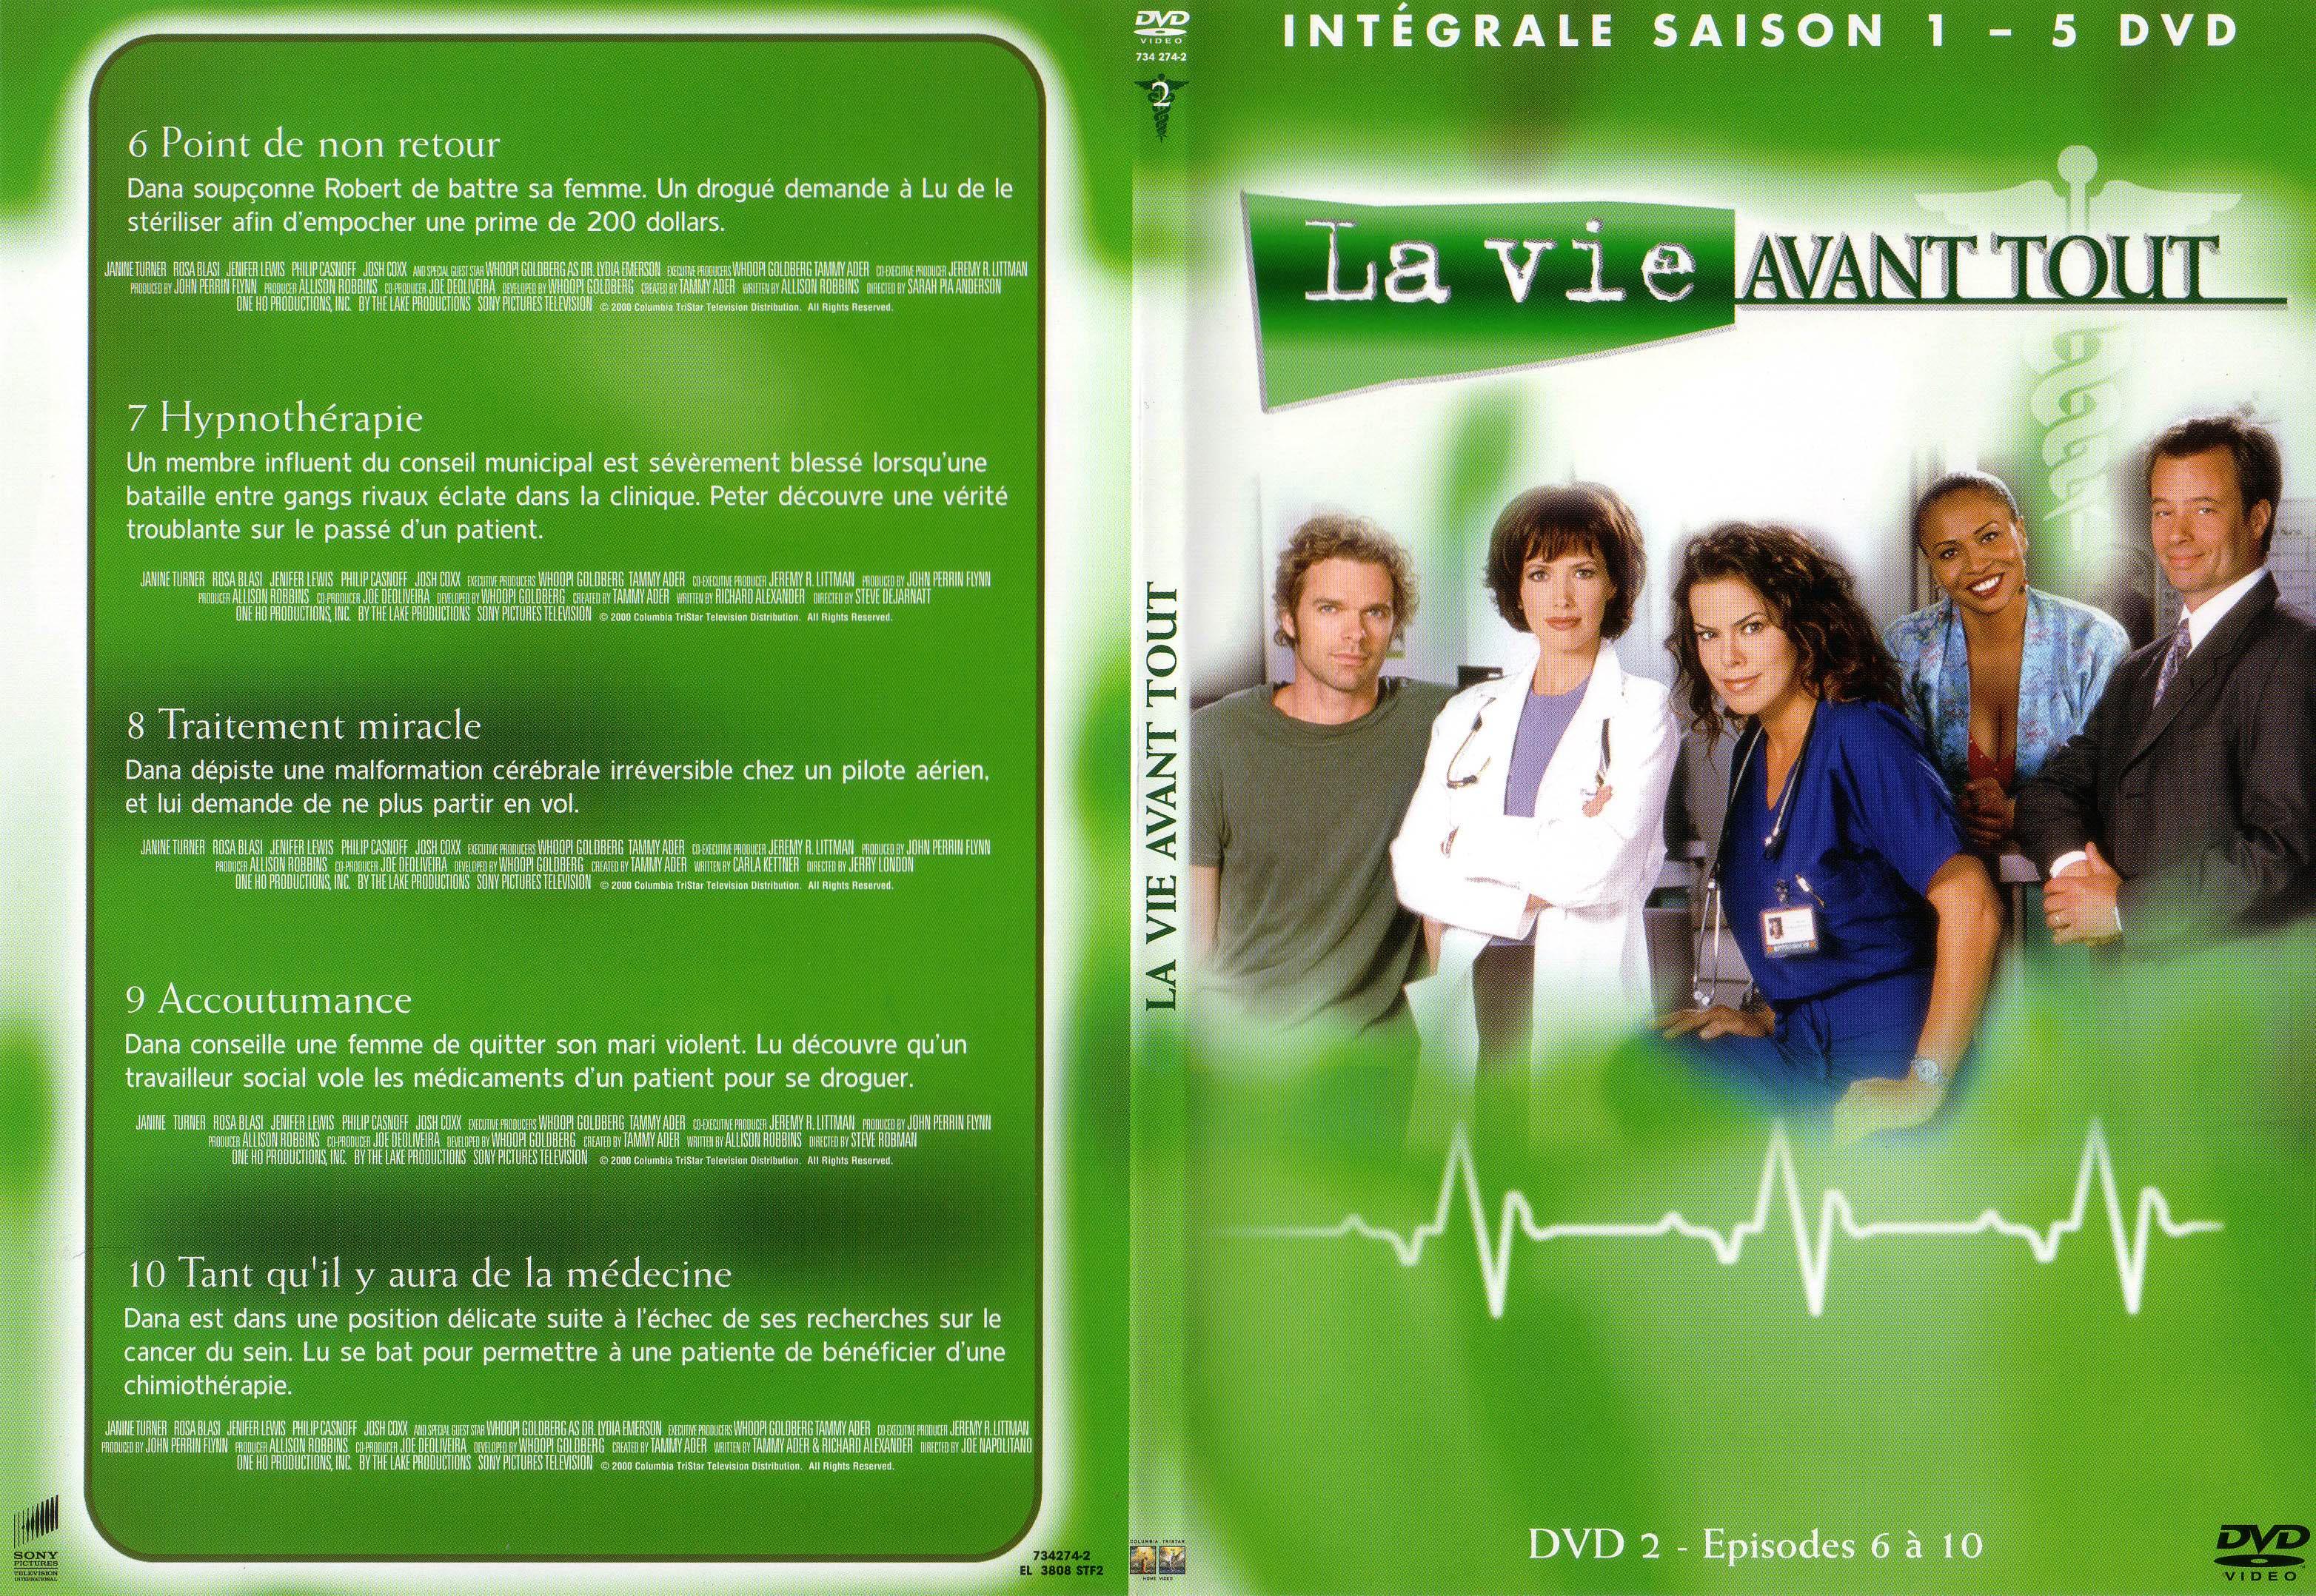 Jaquette DVD La vie avant tout Saison 1 vol 2